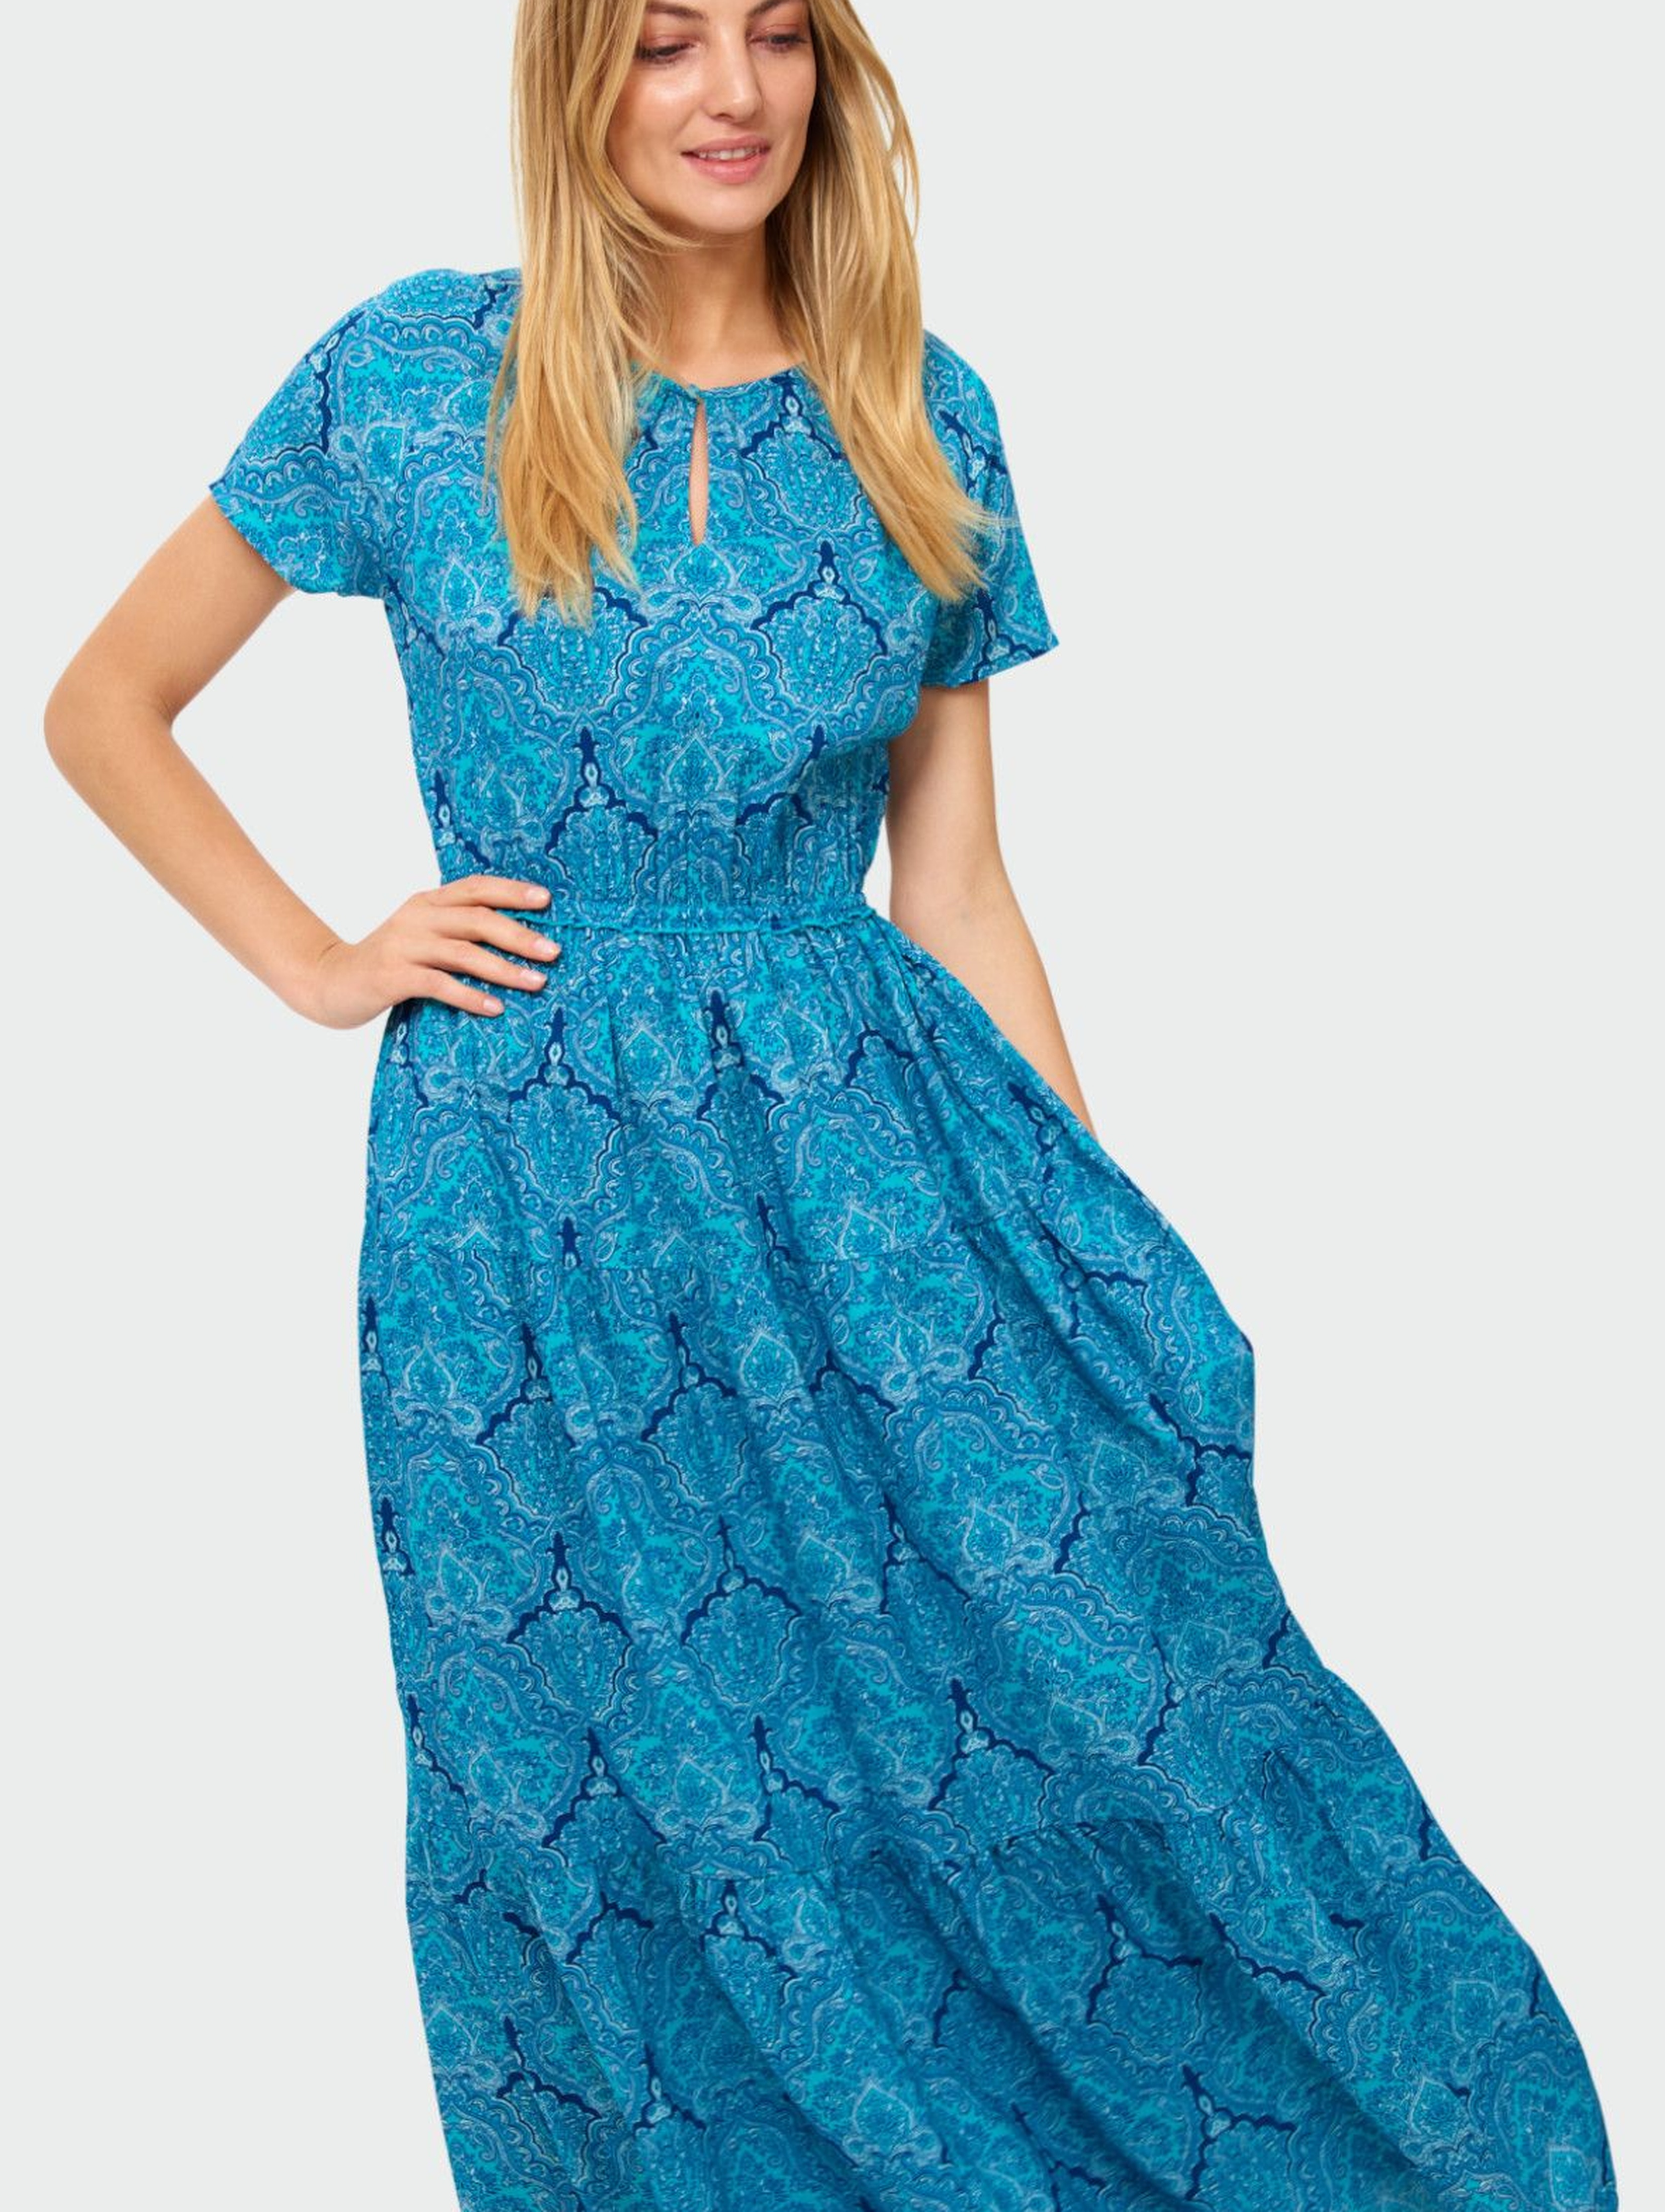 Wiskozowa długa sukienka z nadrukiem - niebieska